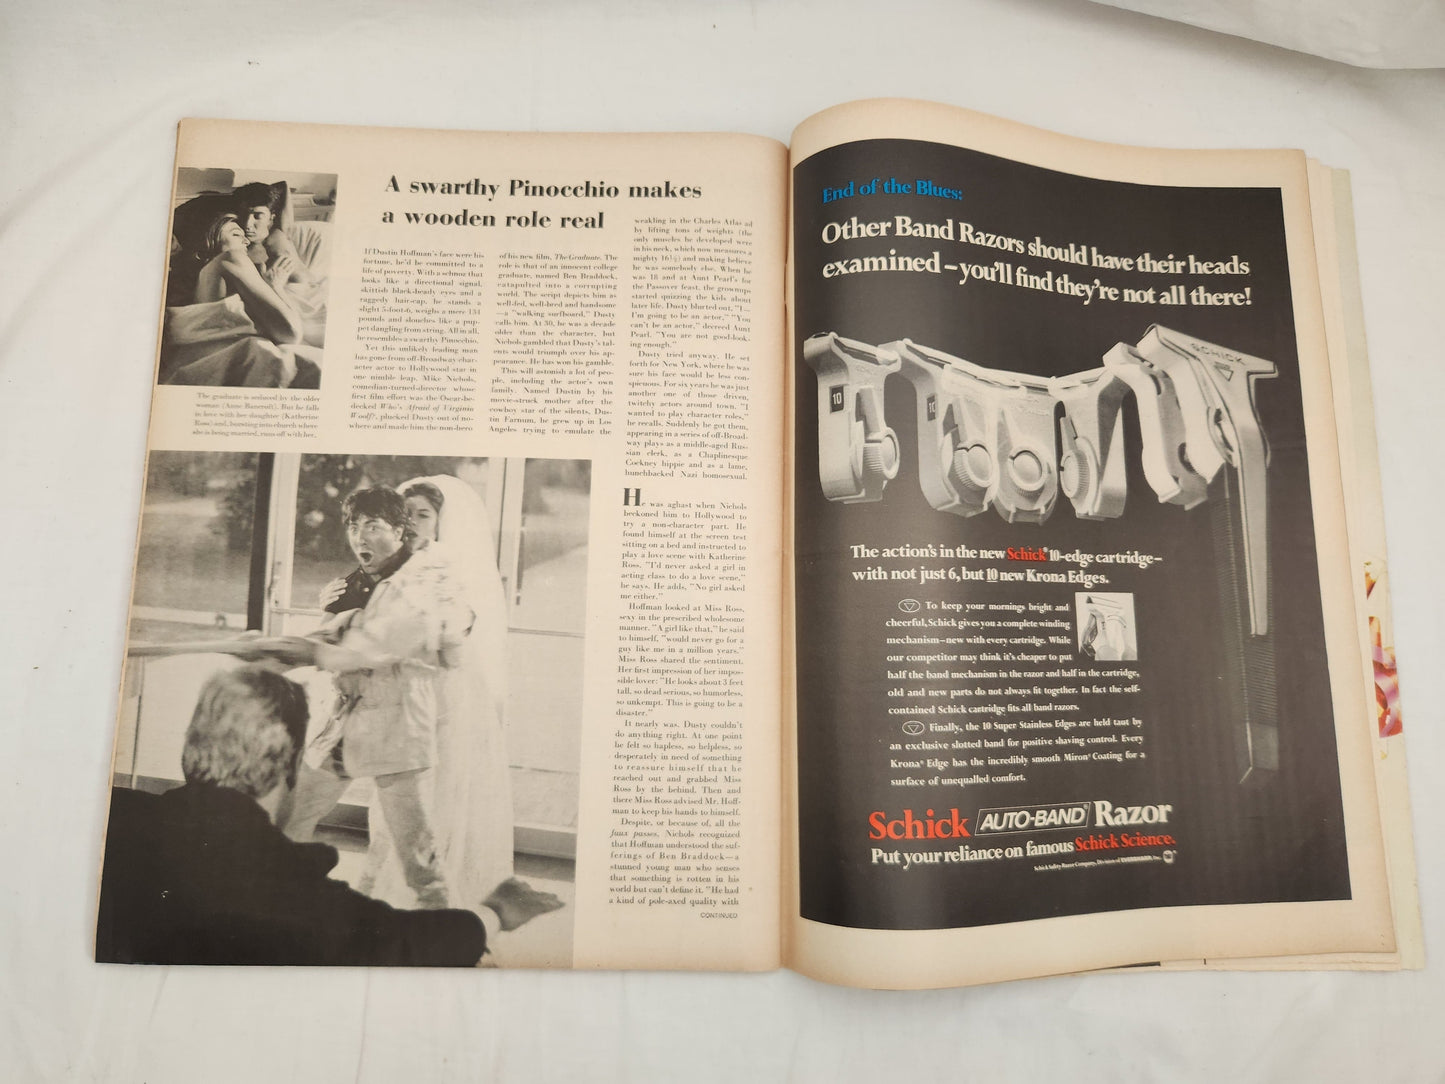 VTG - Nov 24, 1967 Life Magazine - Why Kennedy went to Texas